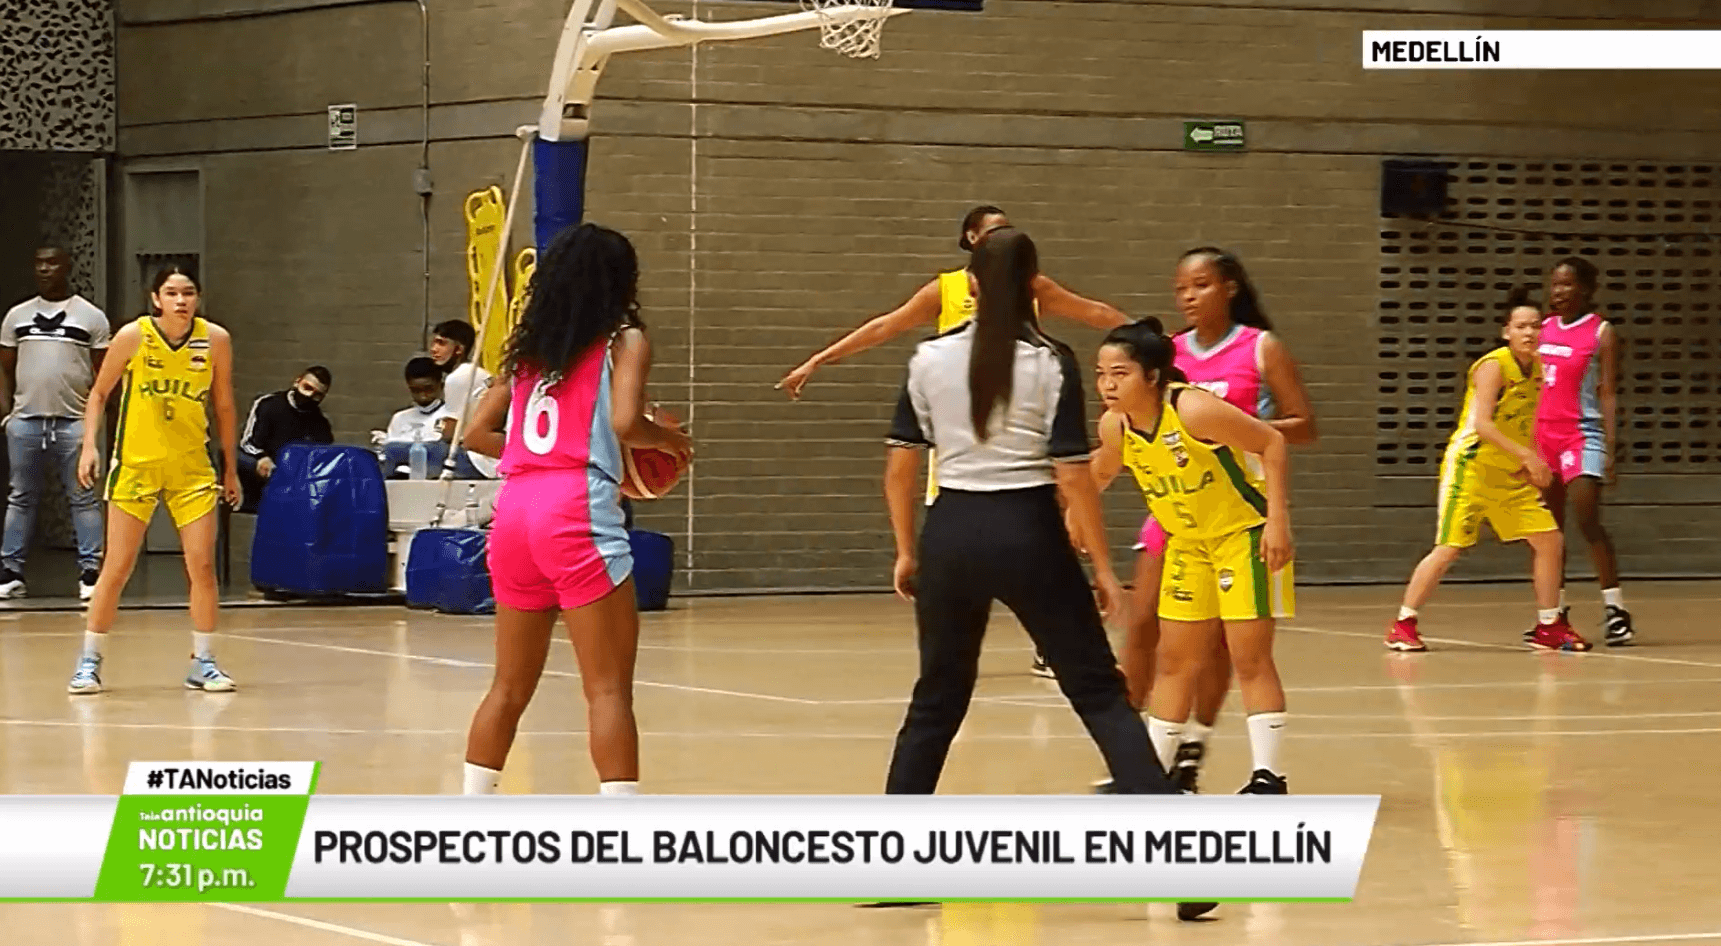 Prospectos del baloncesto juvenil en Medellín